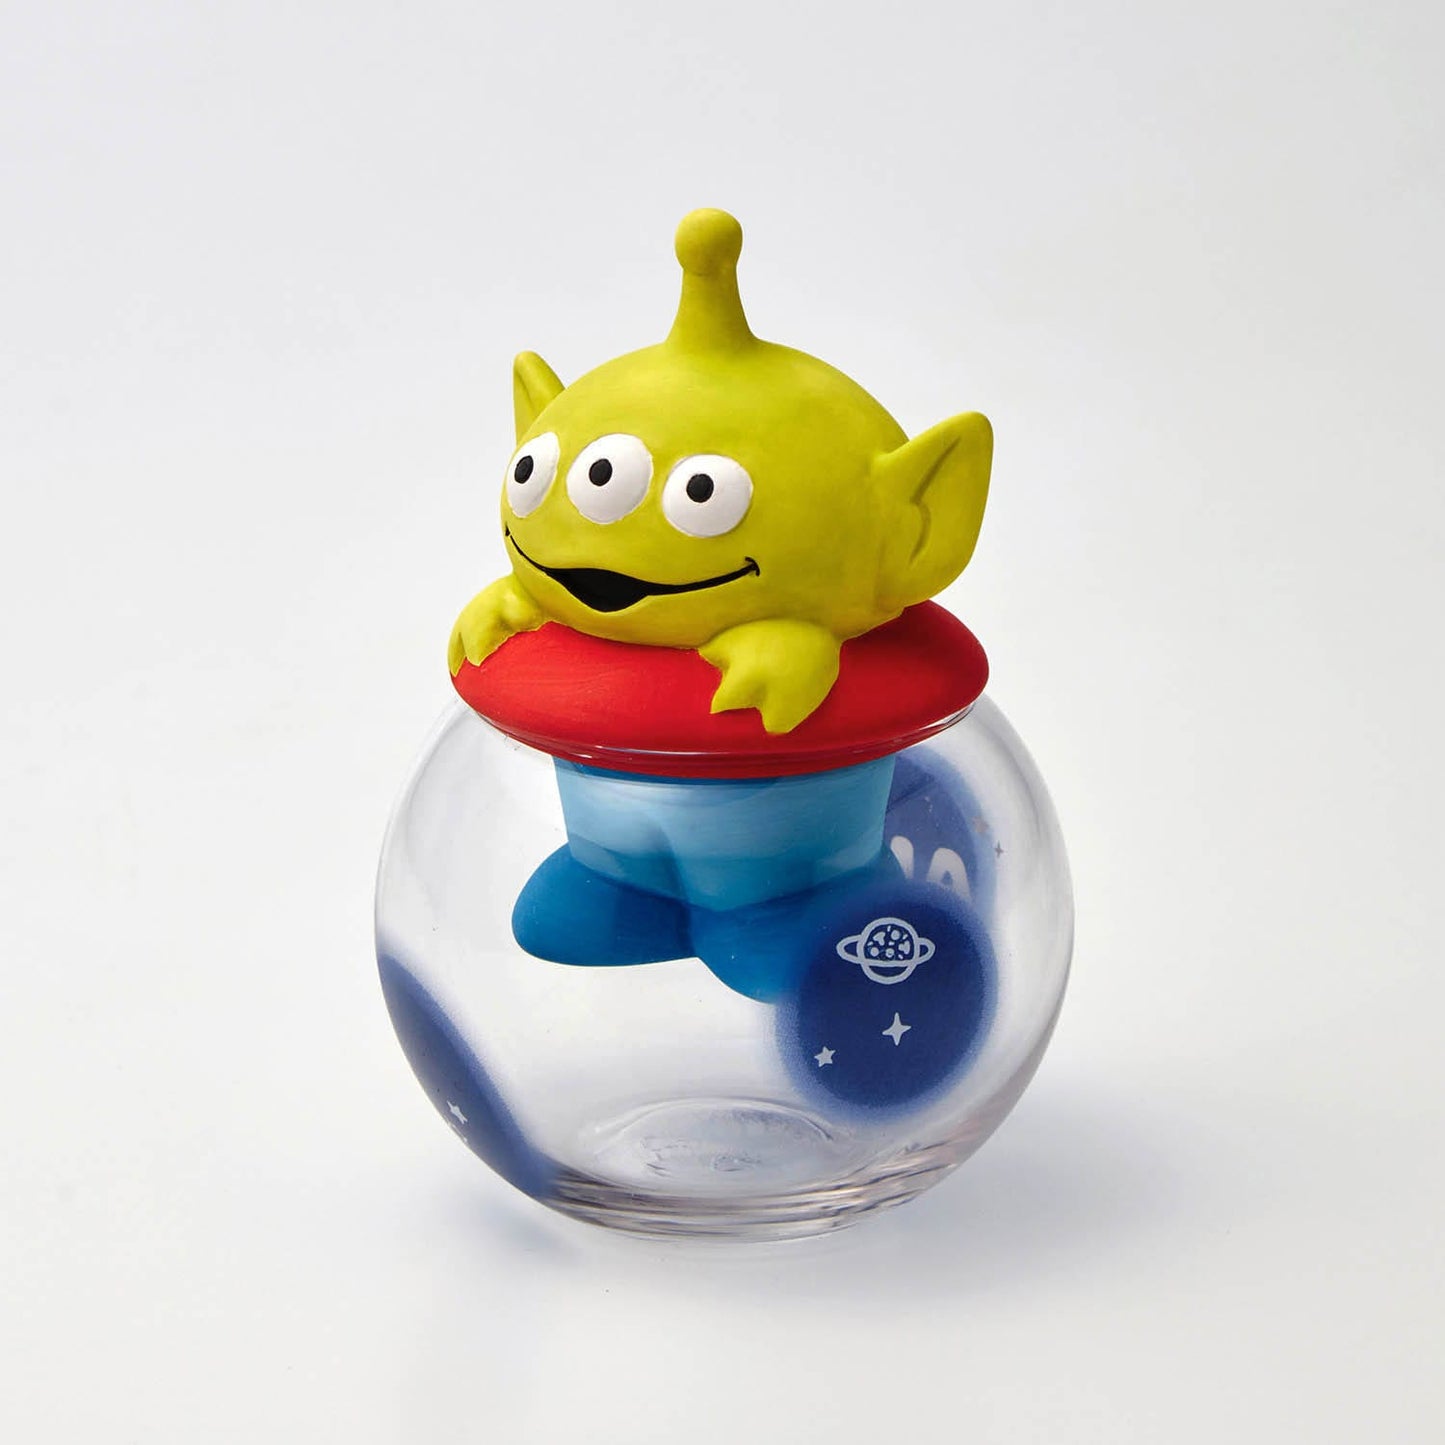 現貨 玻璃球狀陶瓷加濕器 Pooh/ Ariel/ Lotso/ 三眼仔